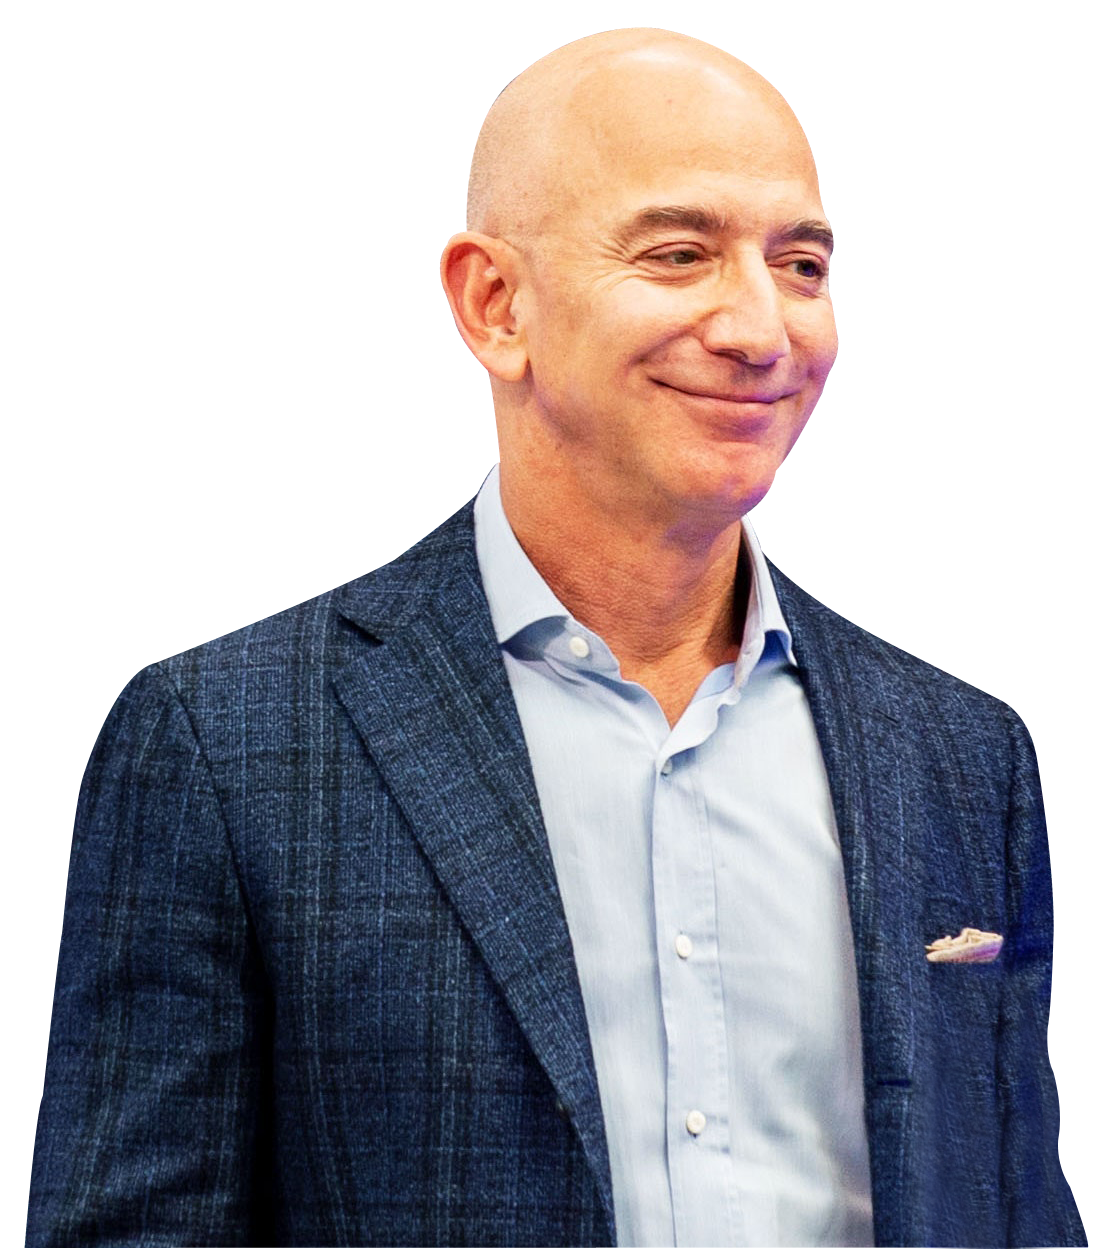 Jeff Bezos PNG Photo Image